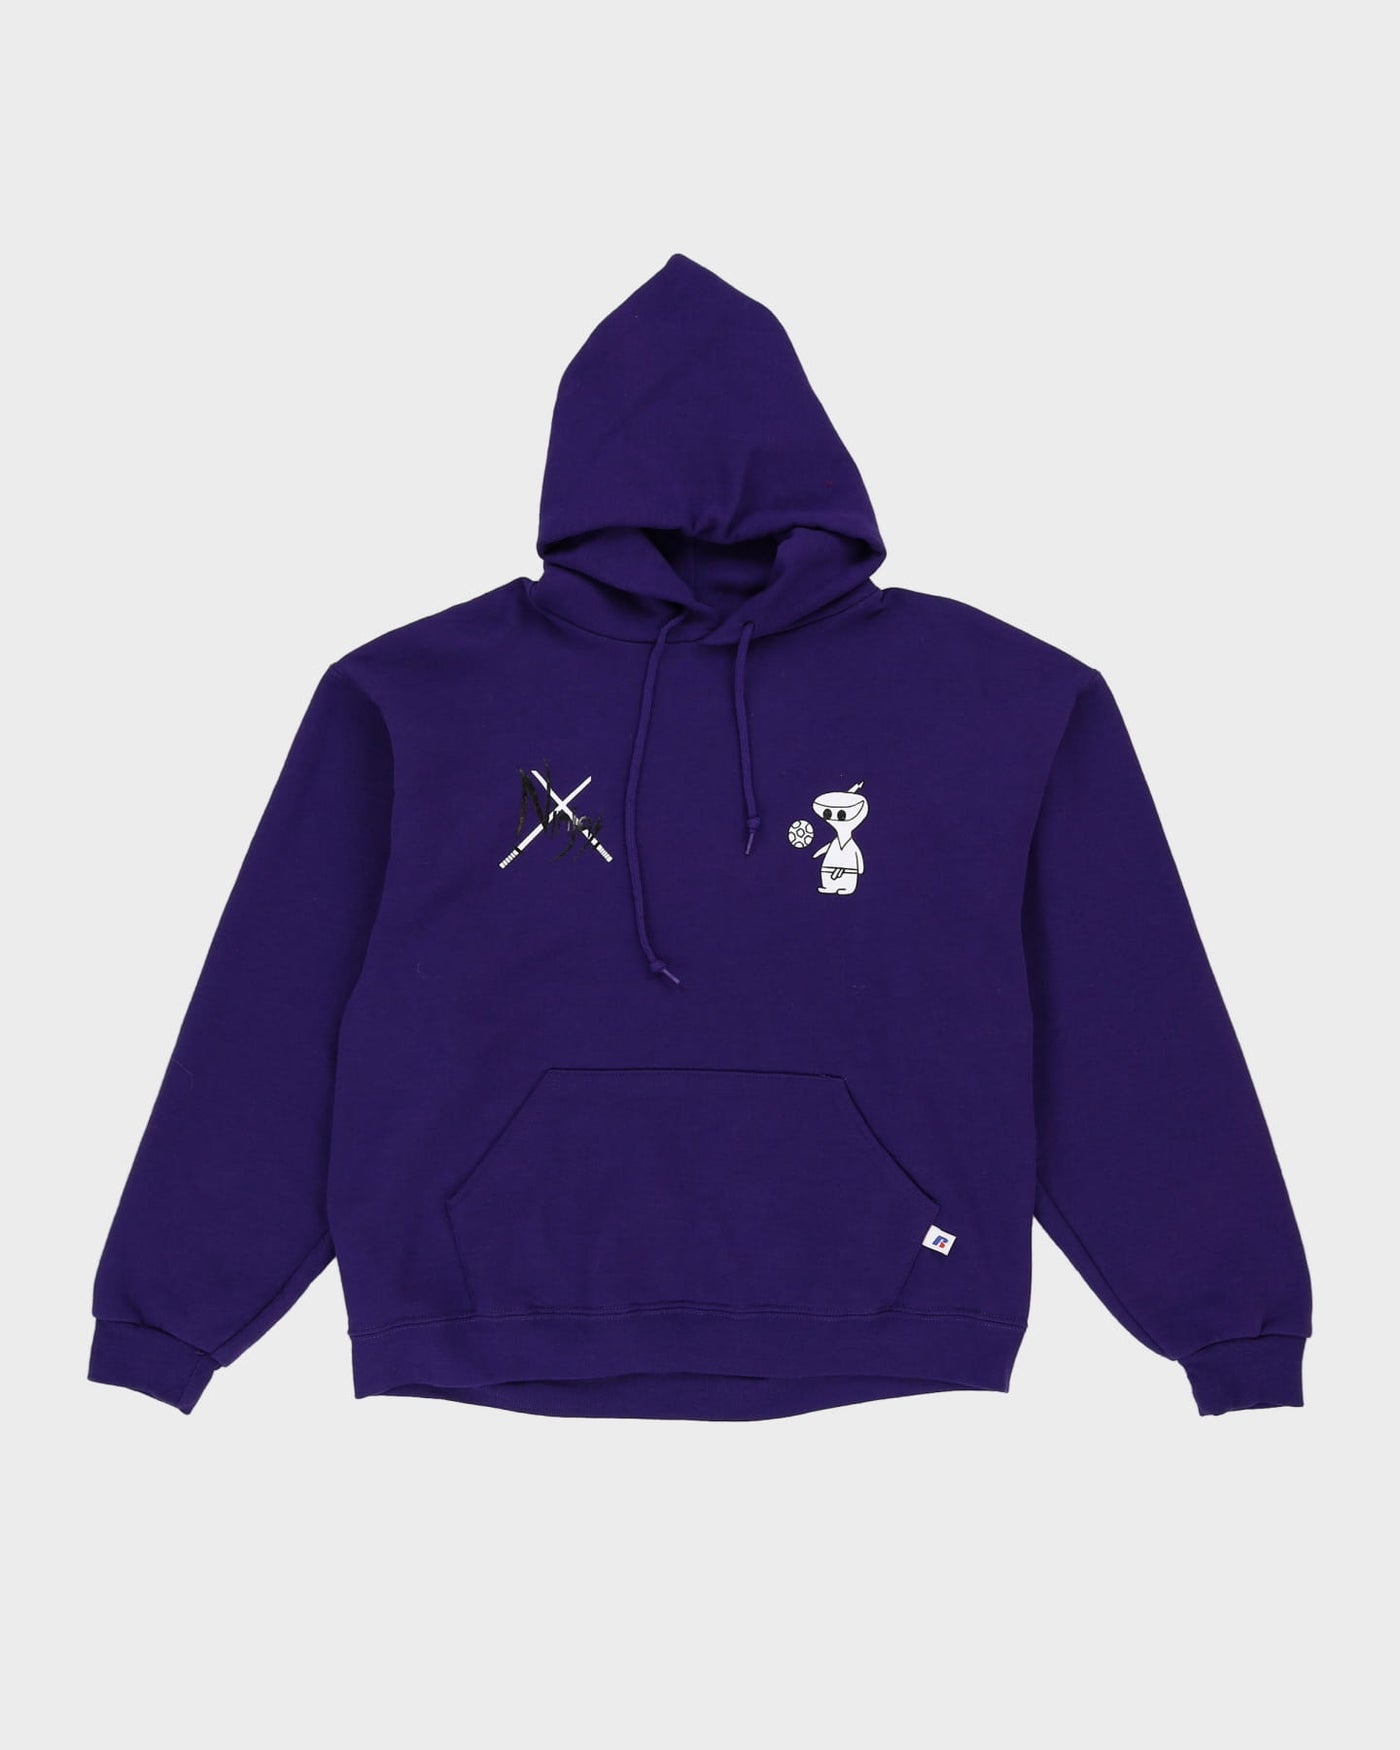 Russell Athletic Purple Ninjas Hoodie - L